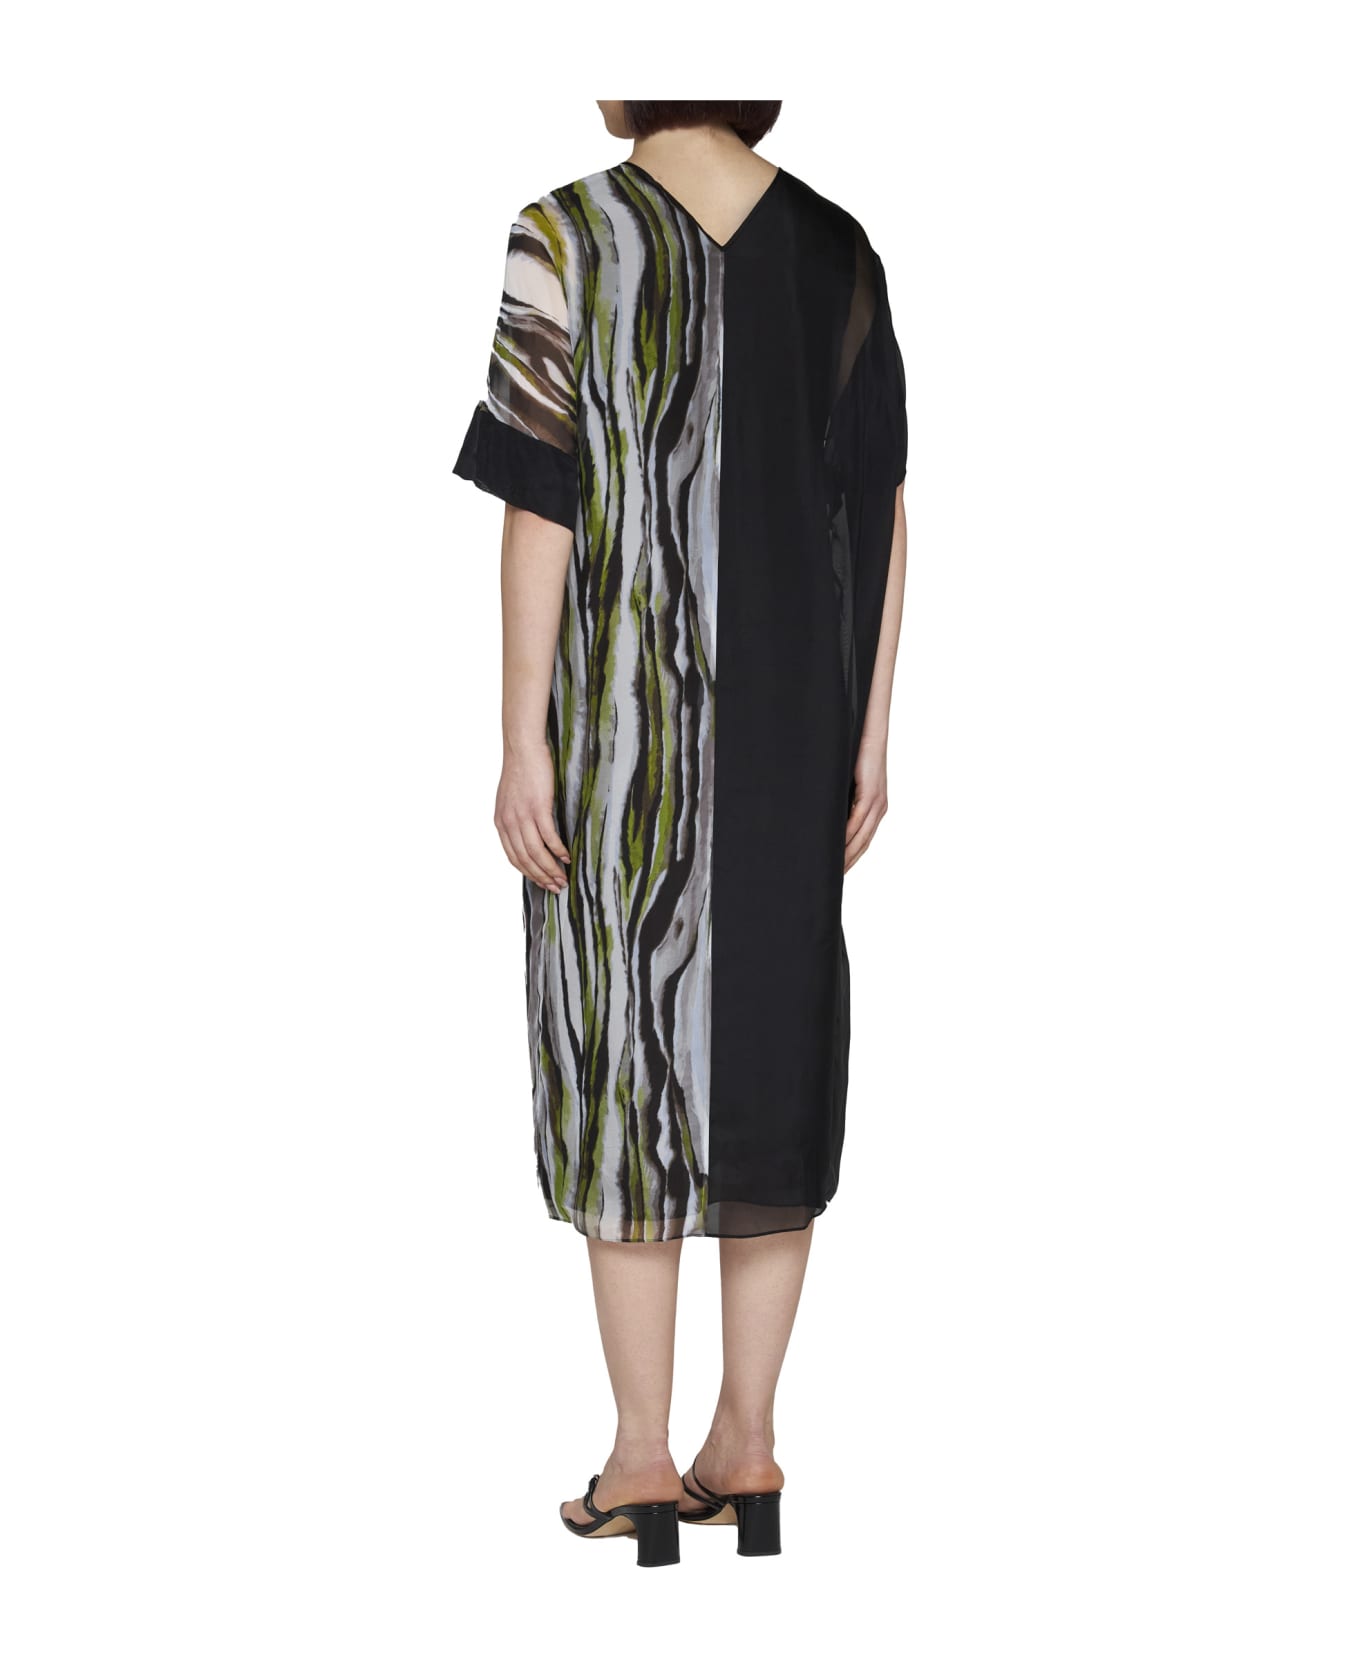 Diane Von Furstenberg Dress - Zebra mist/black